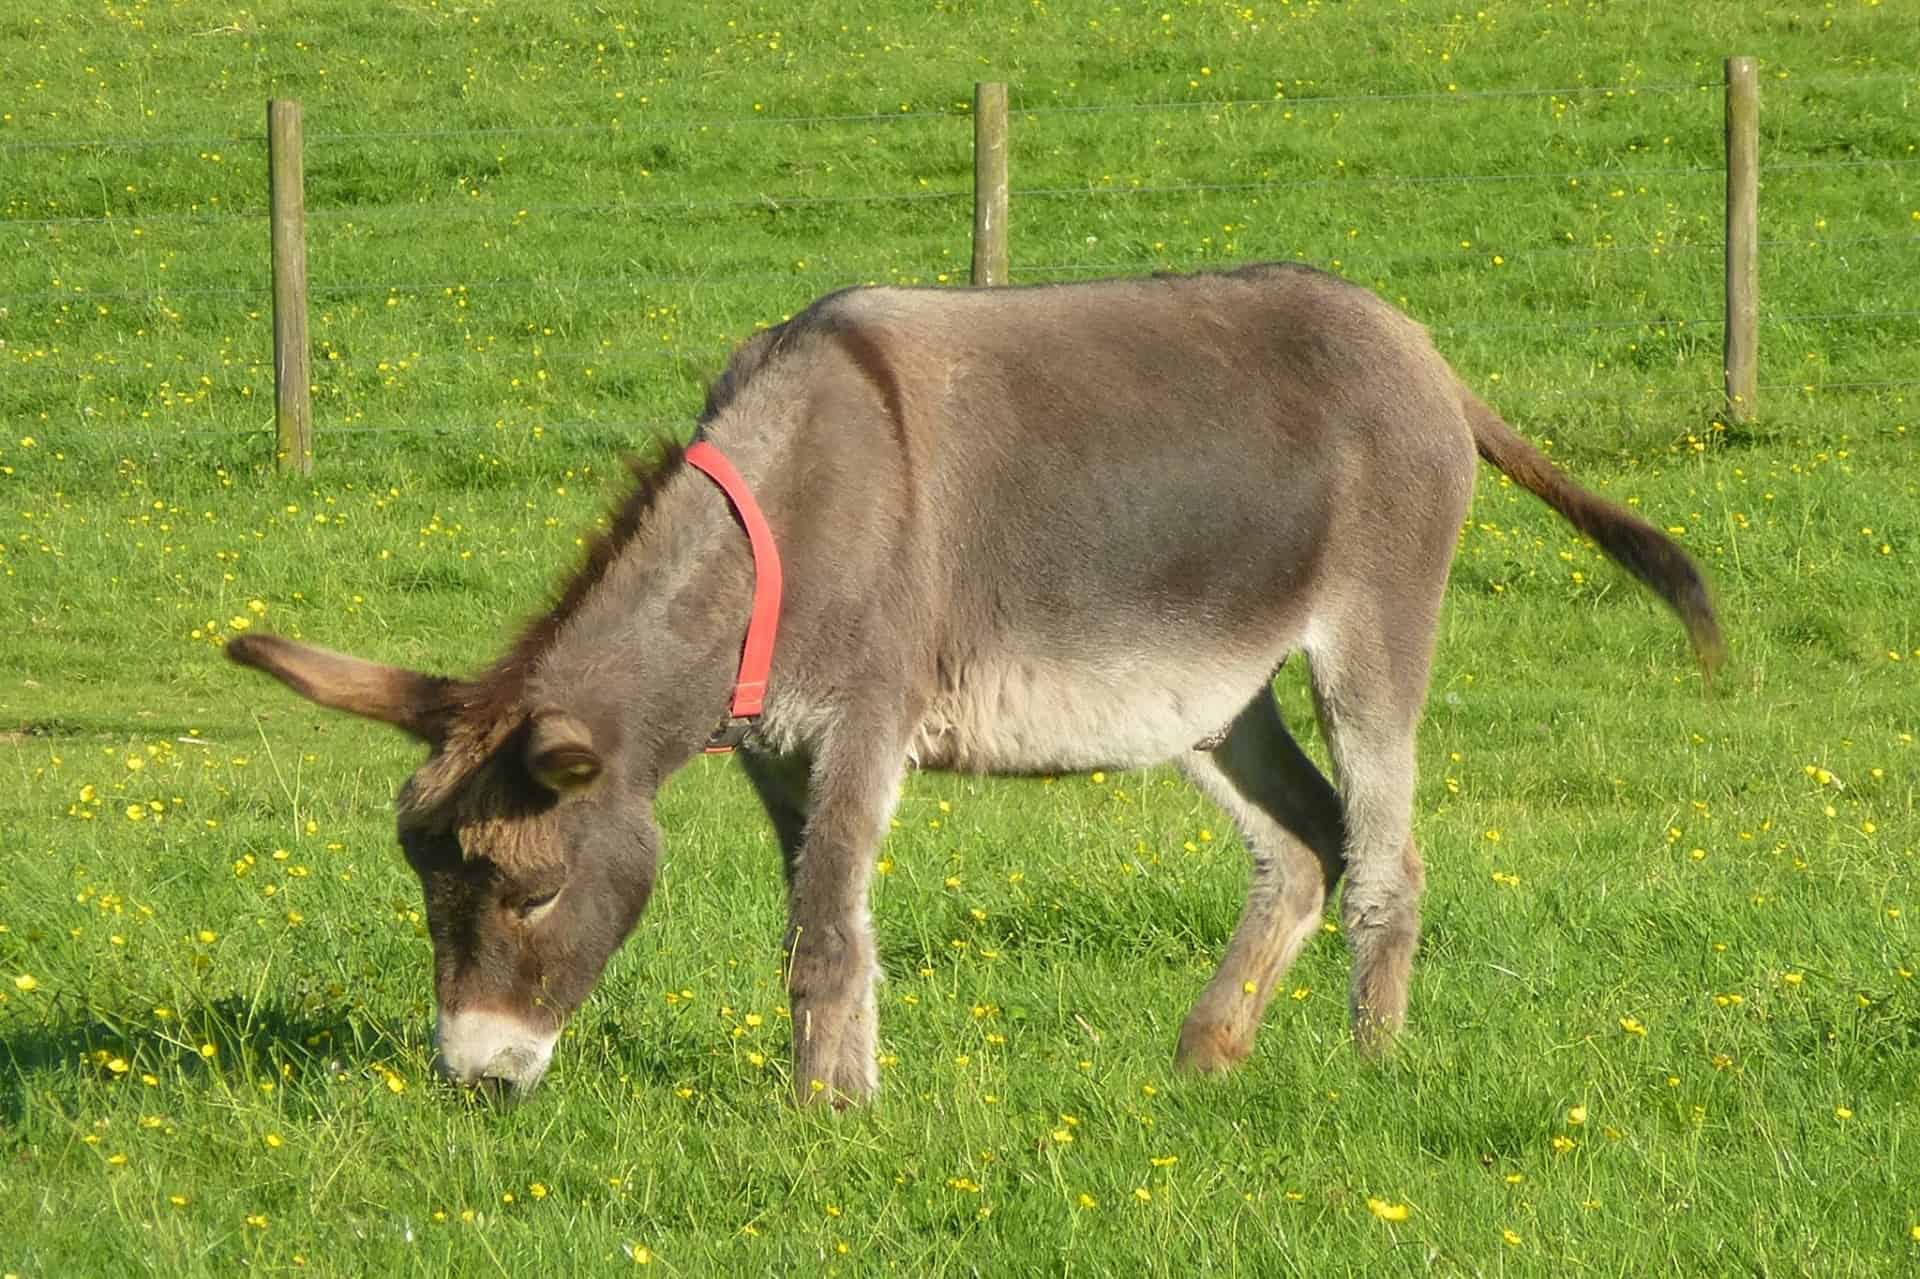 The Scottish Borders Donkey Sanctuary in UK